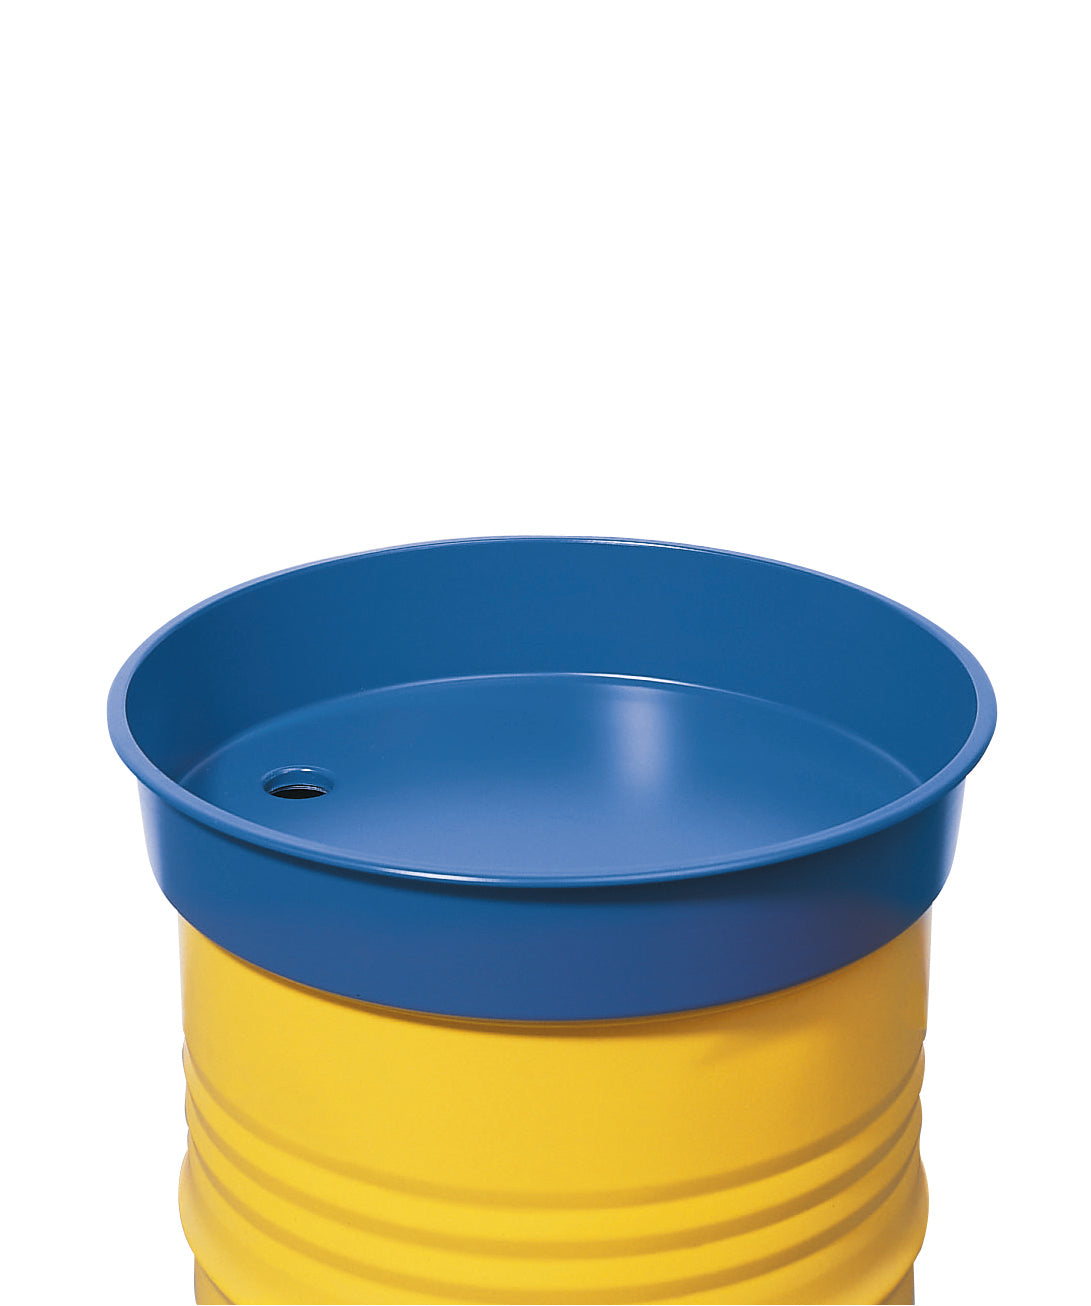 Round barrel funnel made of steel, blue, for 200 liter barrels, 30 L volume, smooth powder-coated steel